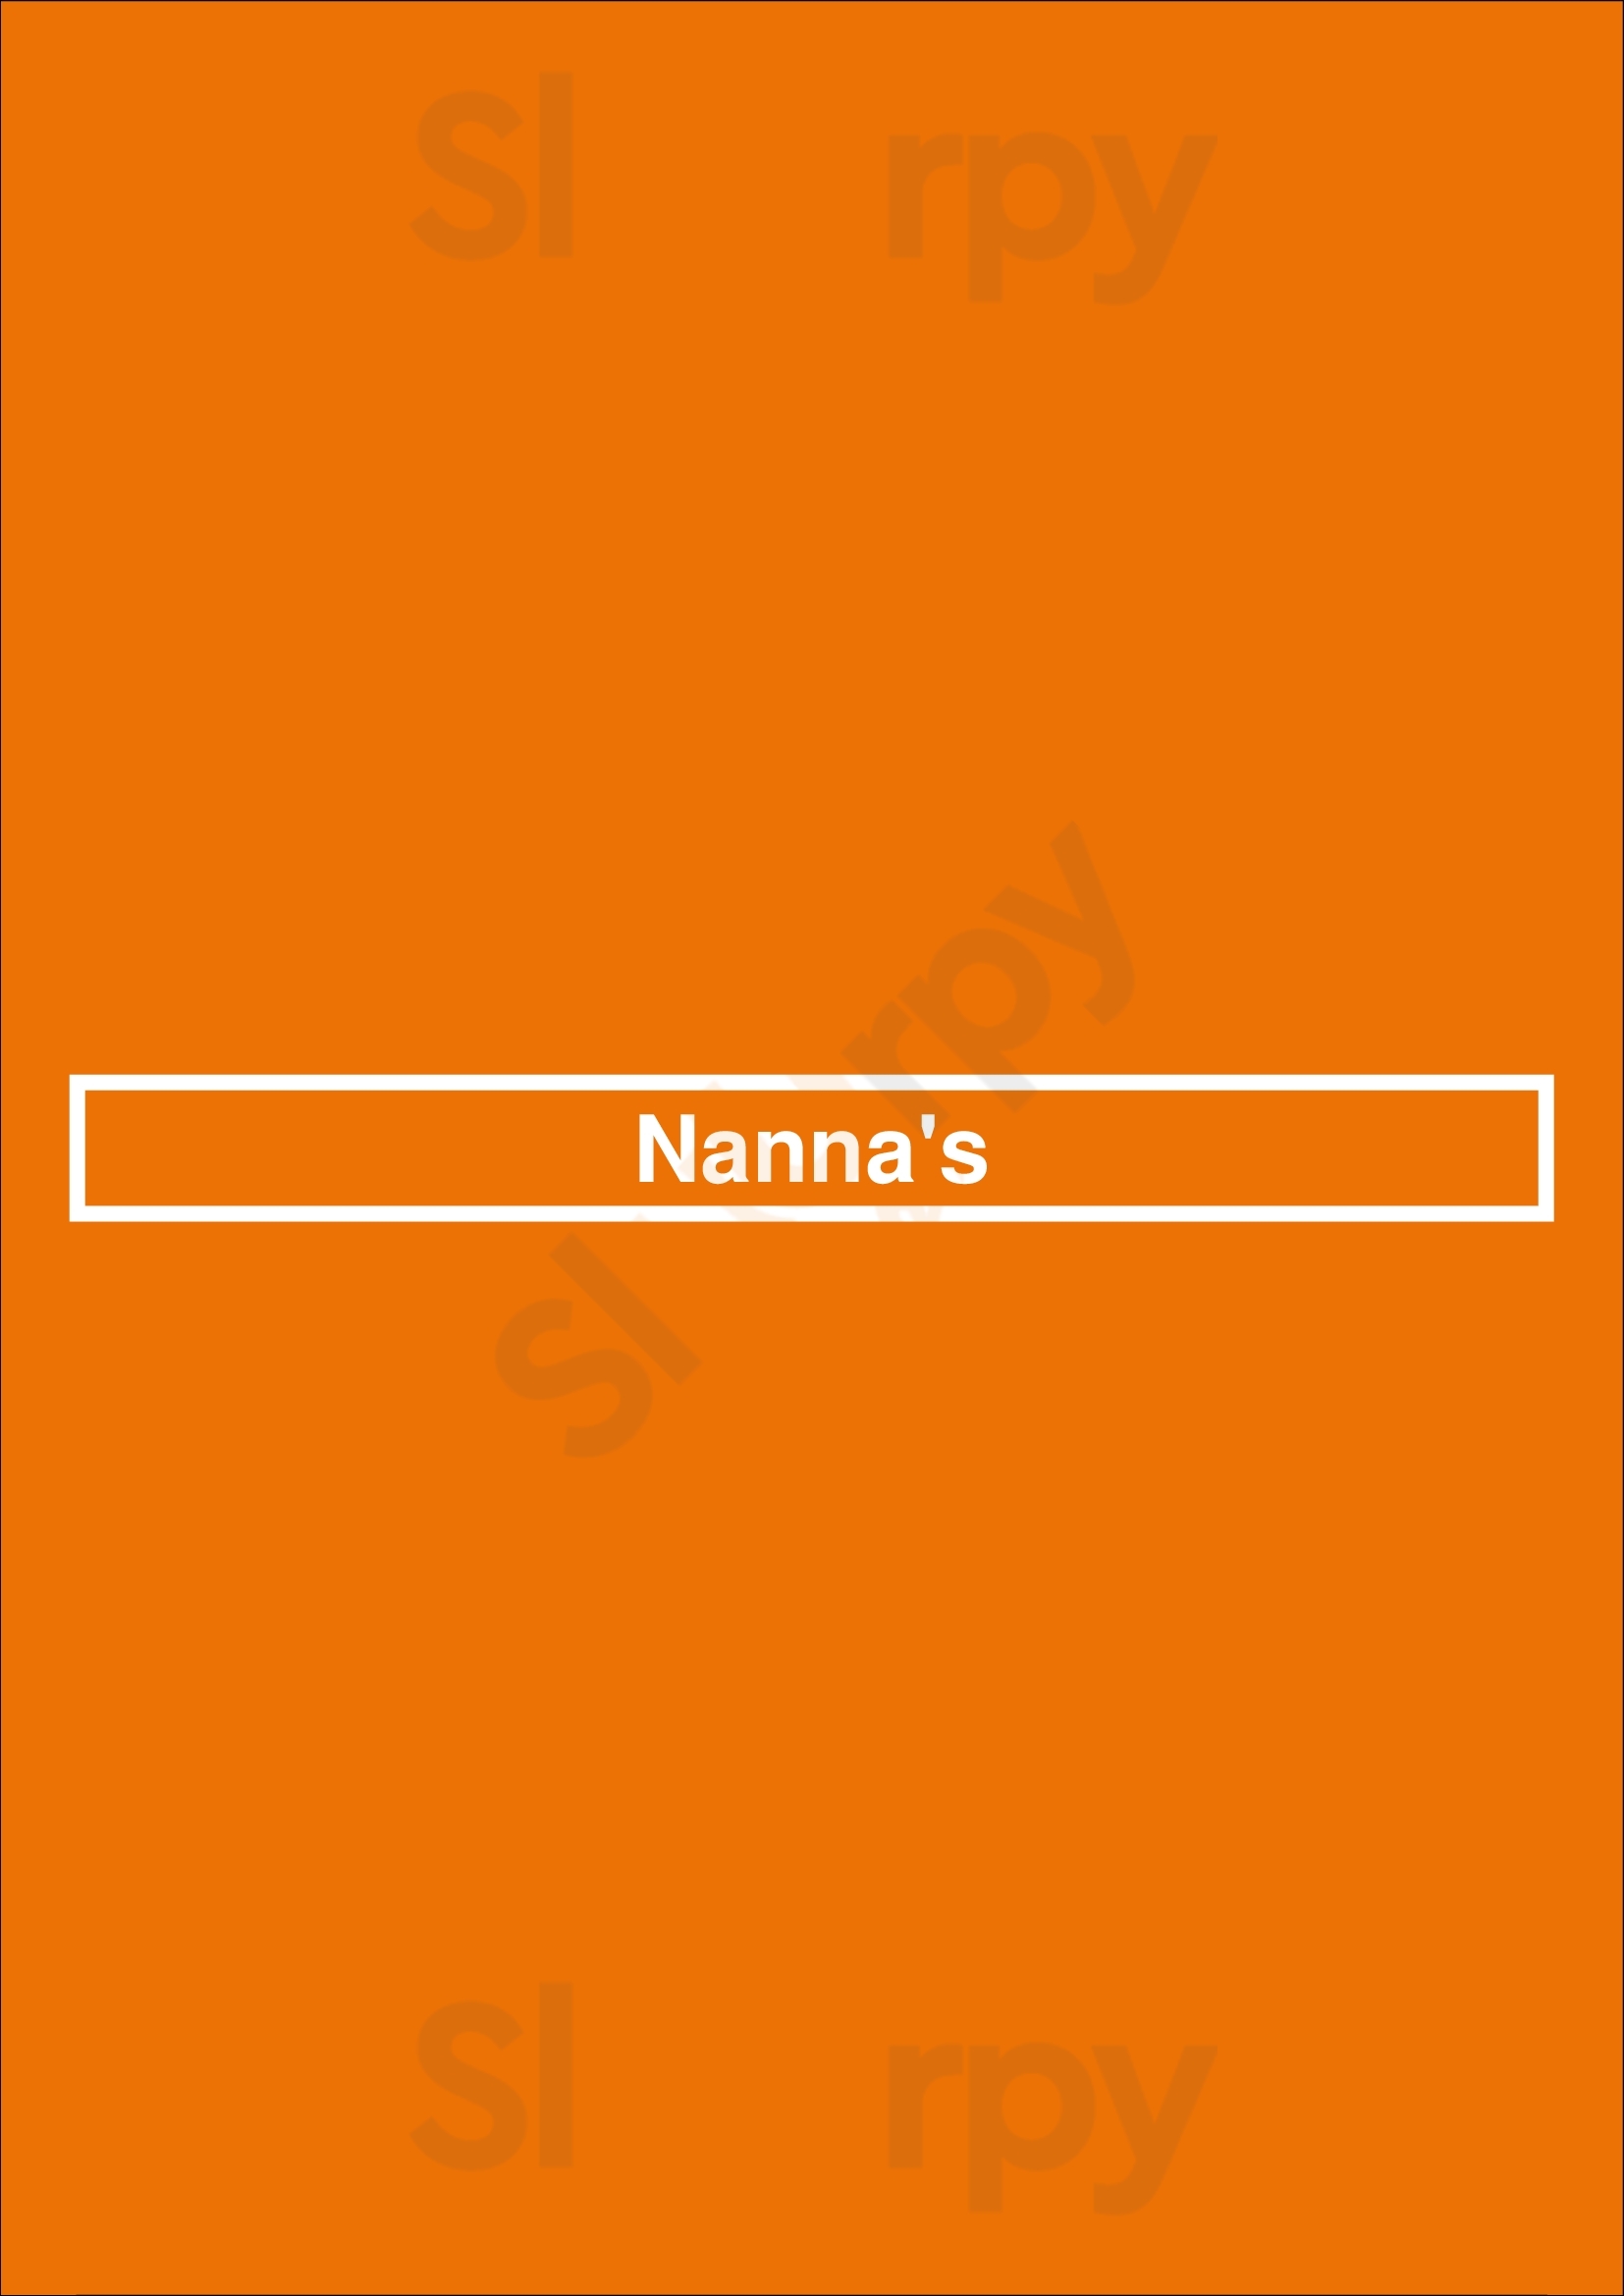 Nanna's Denver Menu - 1